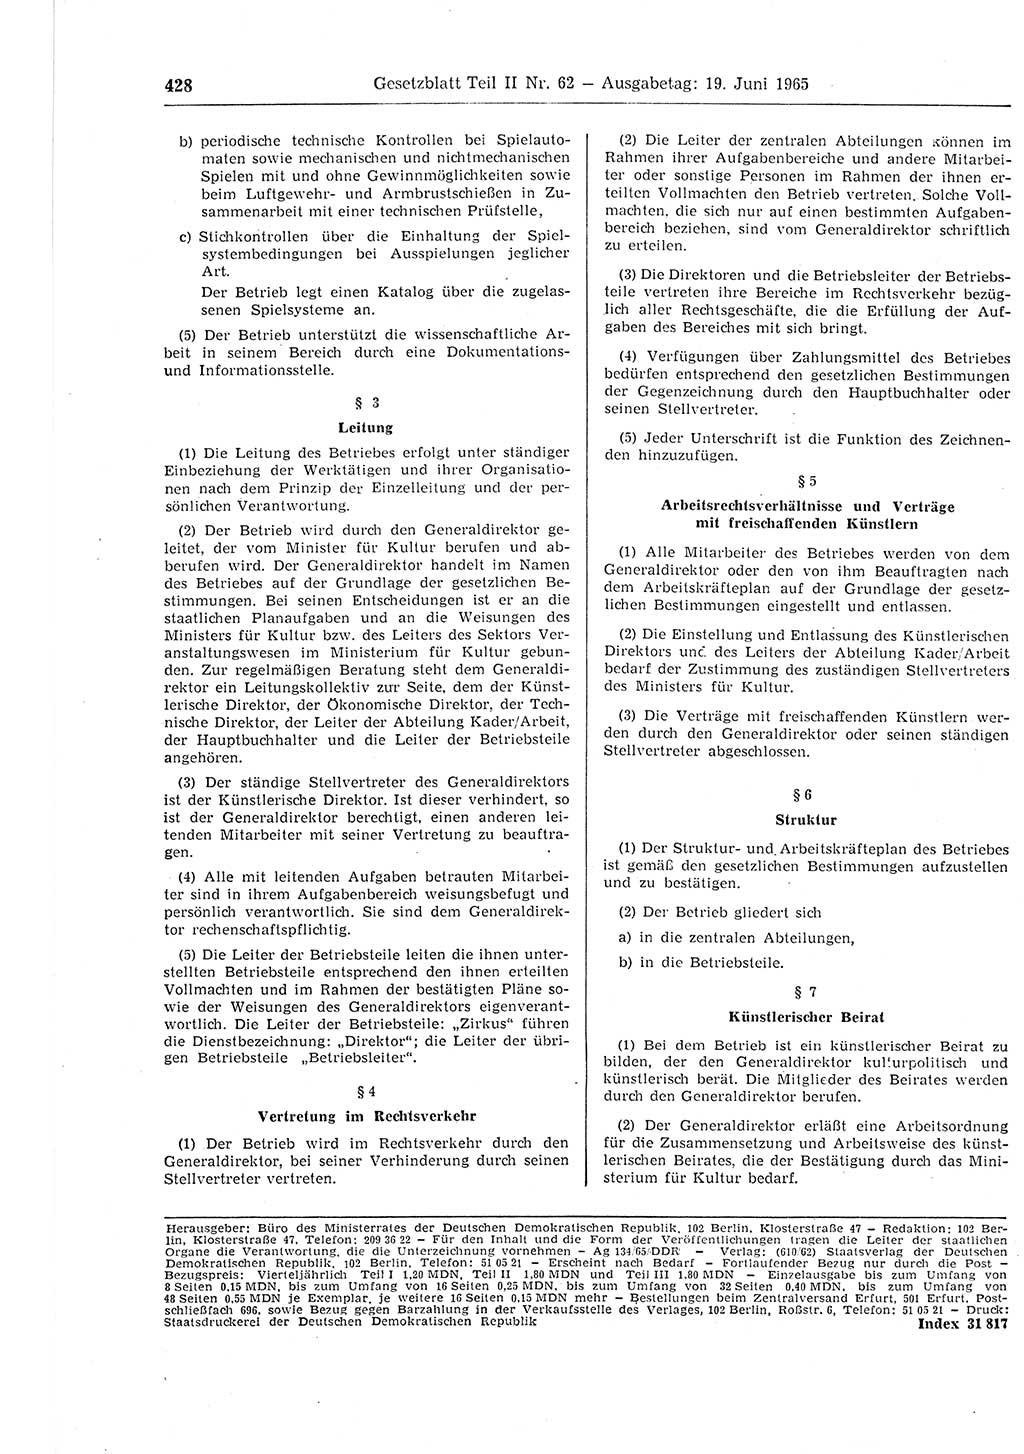 Gesetzblatt (GBl.) der Deutschen Demokratischen Republik (DDR) Teil ⅠⅠ 1965, Seite 428 (GBl. DDR ⅠⅠ 1965, S. 428)